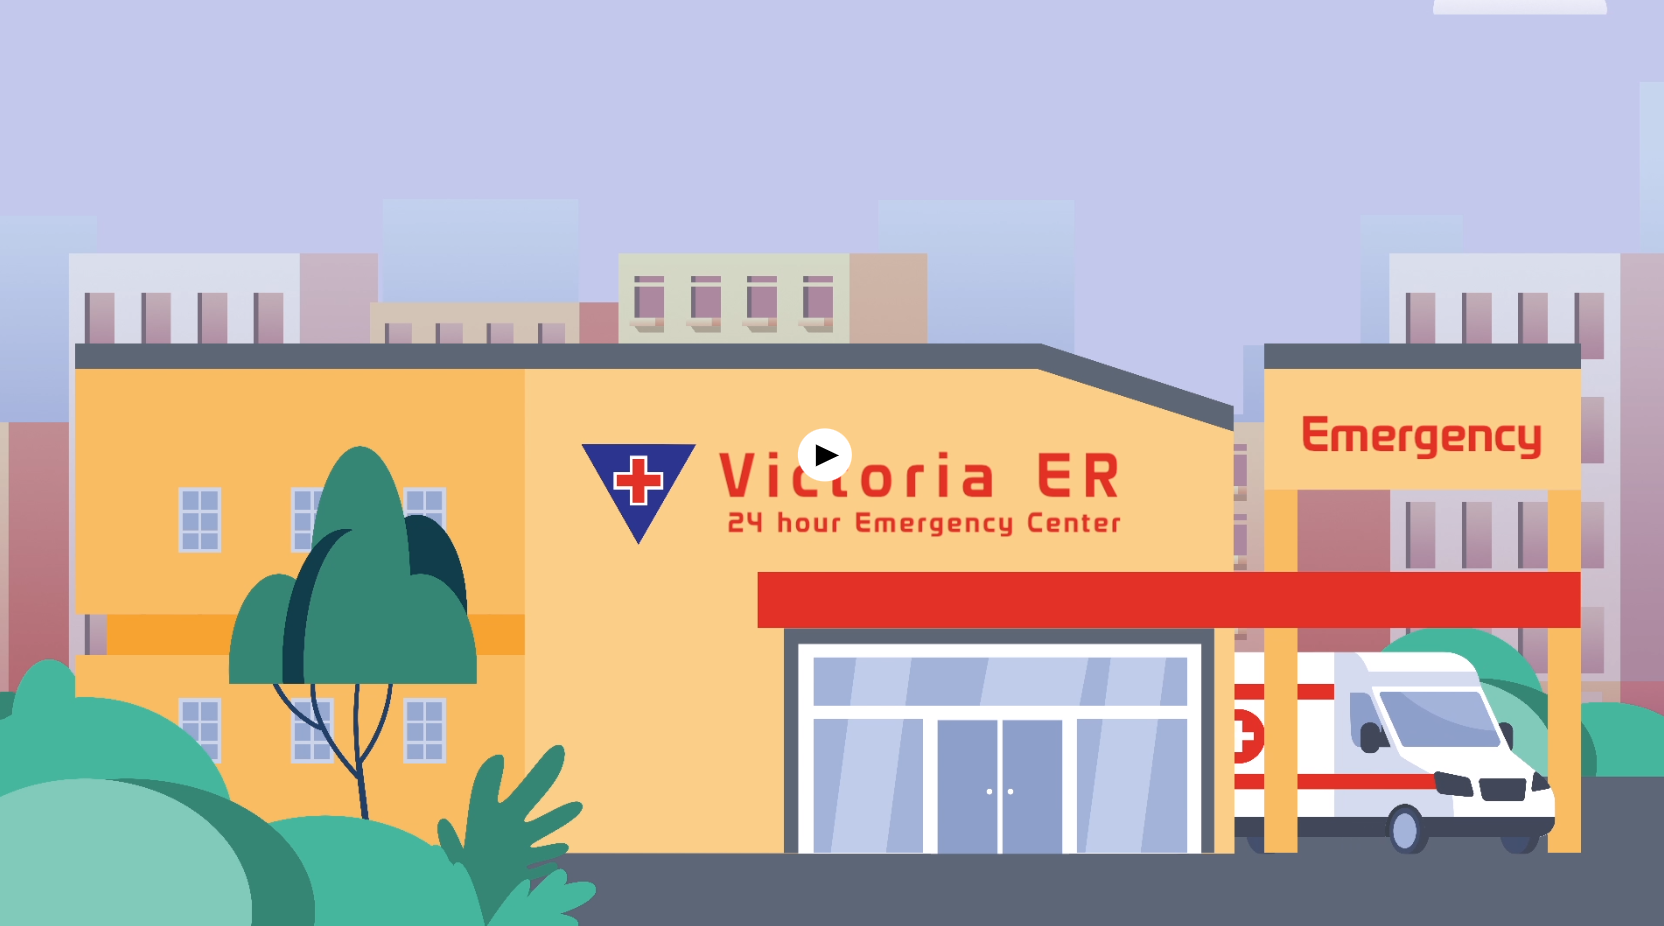 Victoria ER